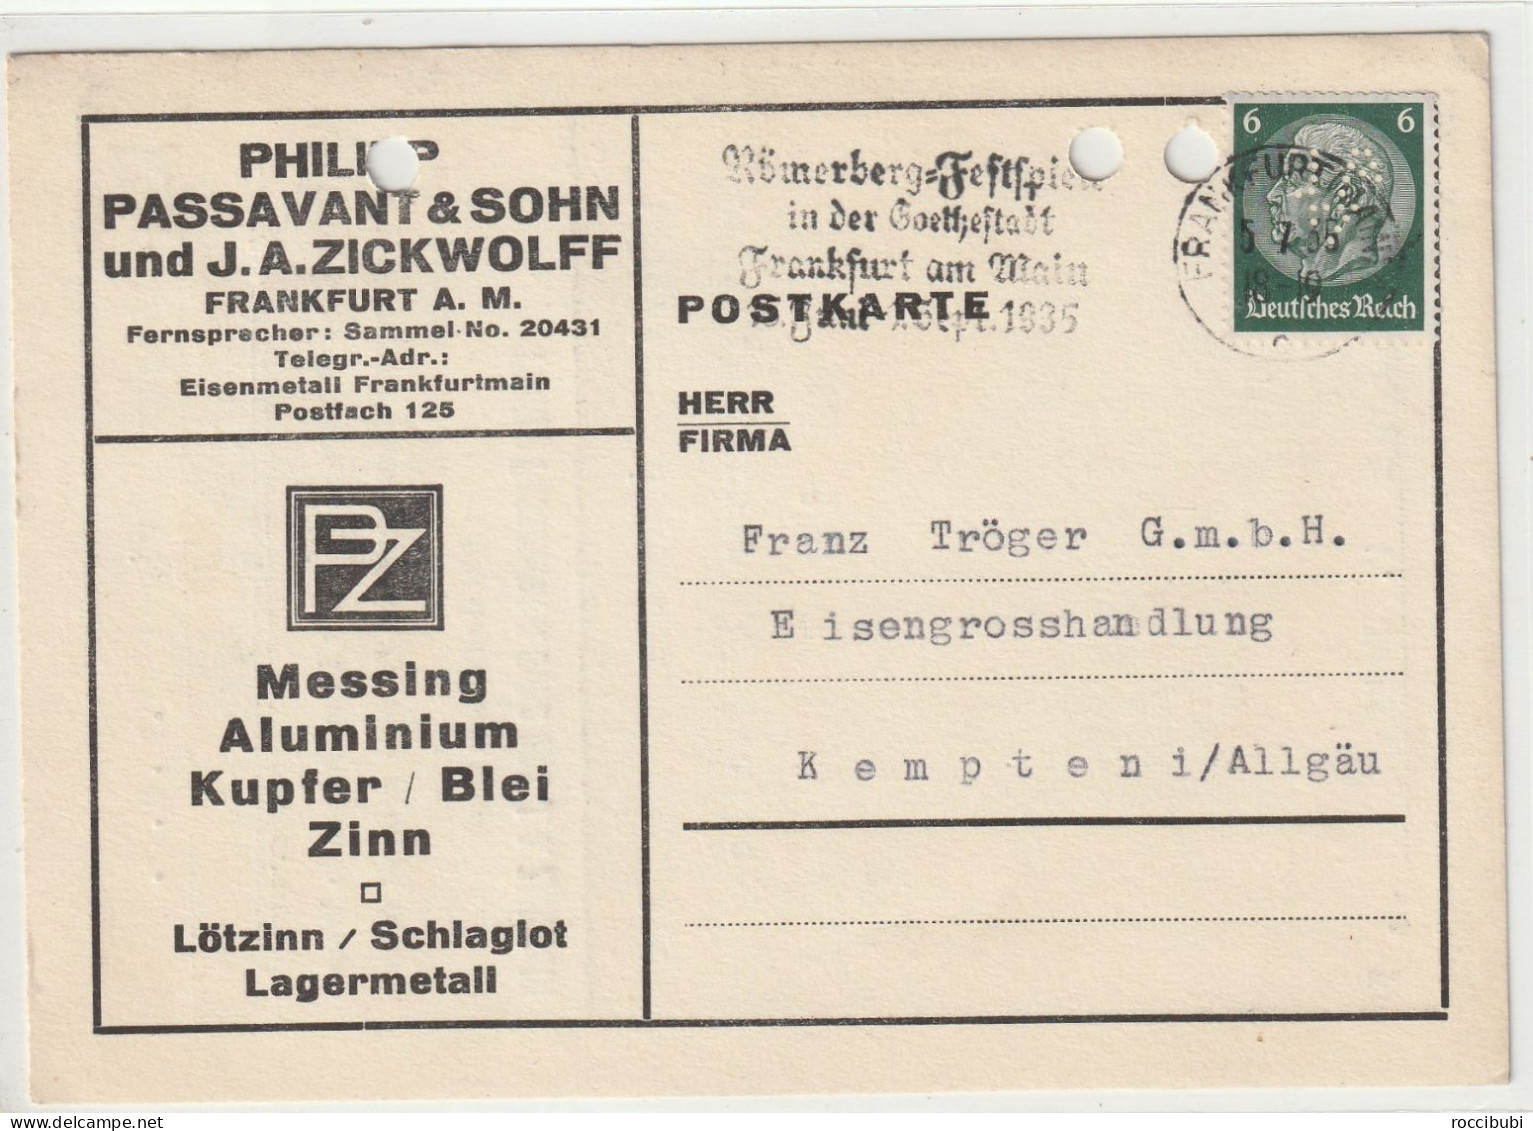 Deutsches Reich, Frankfurt (Main) Nach Kempten 1935 - Private Postal Stationery